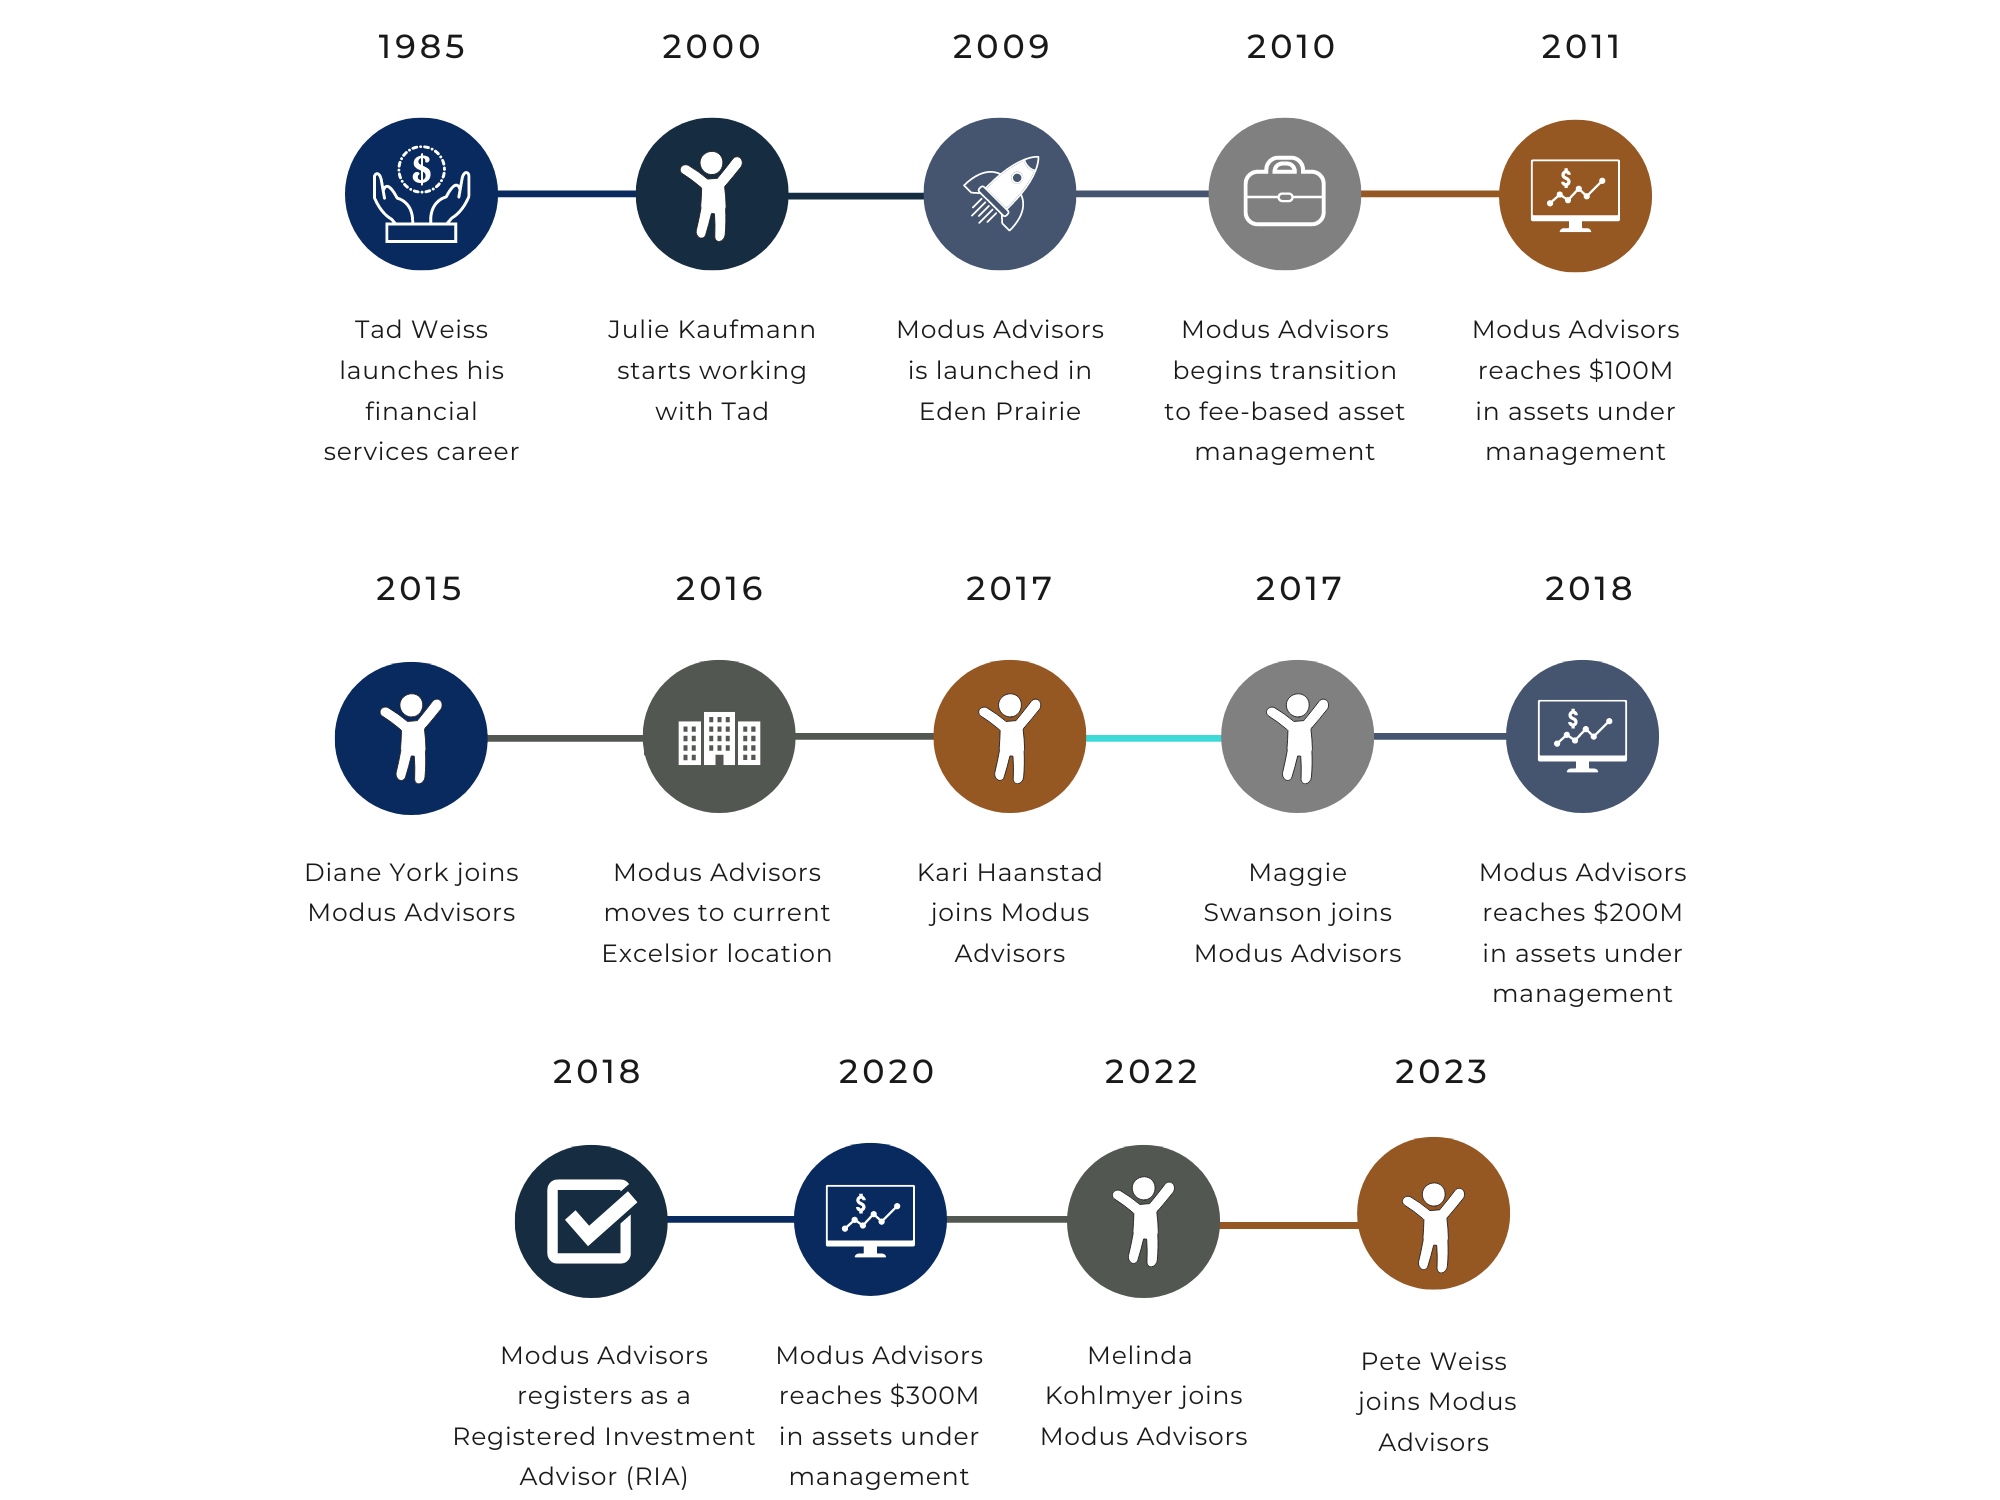 Timeline of company milestones